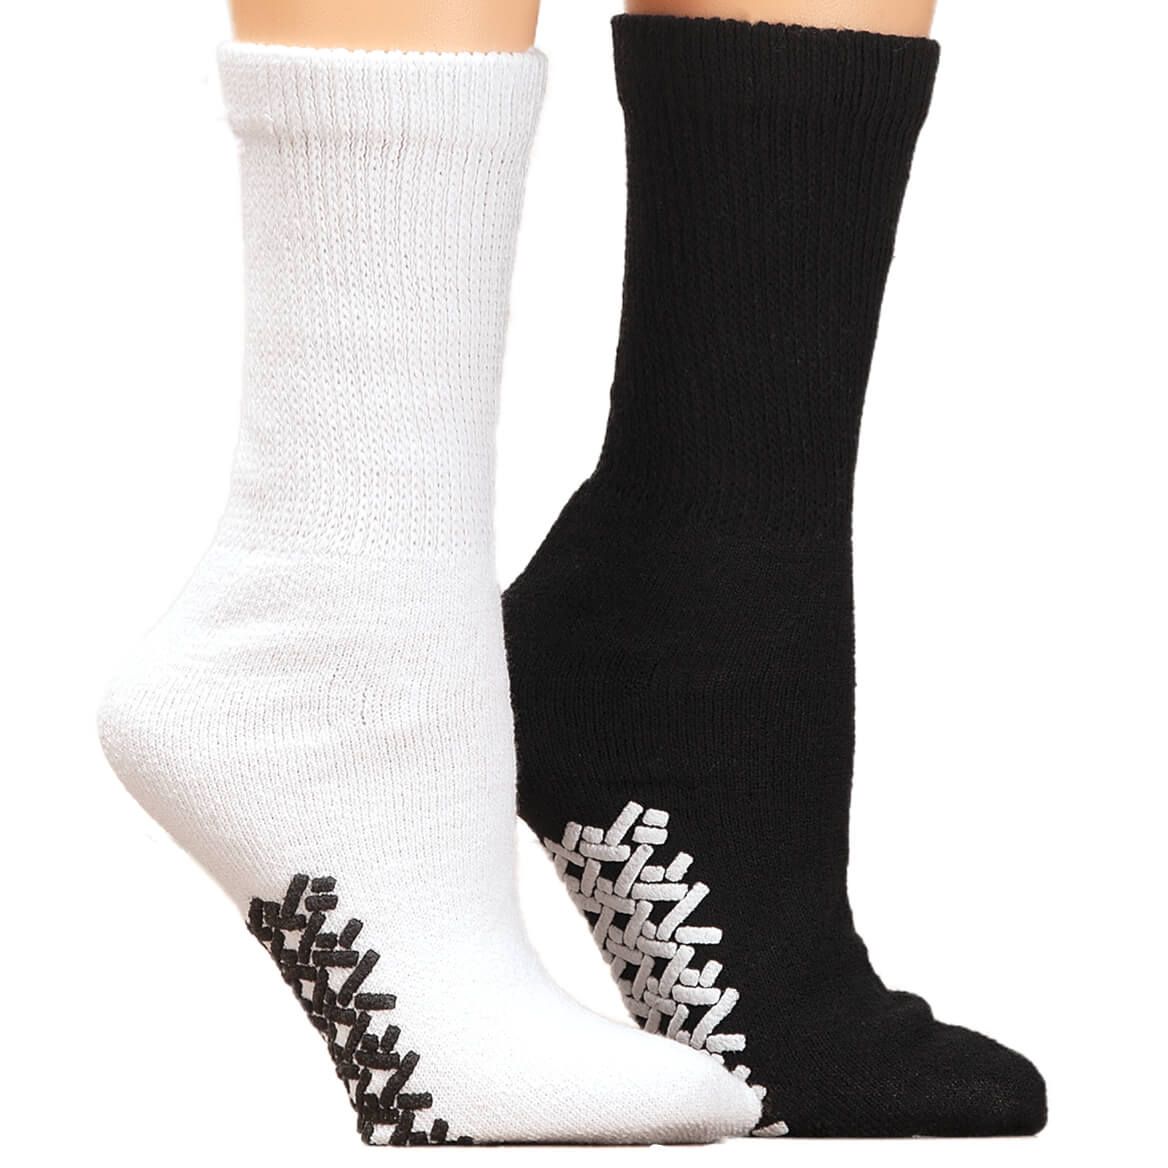 Silver Steps™ Diabetic Gripper Socks, 2 Pairs + '-' + 371090